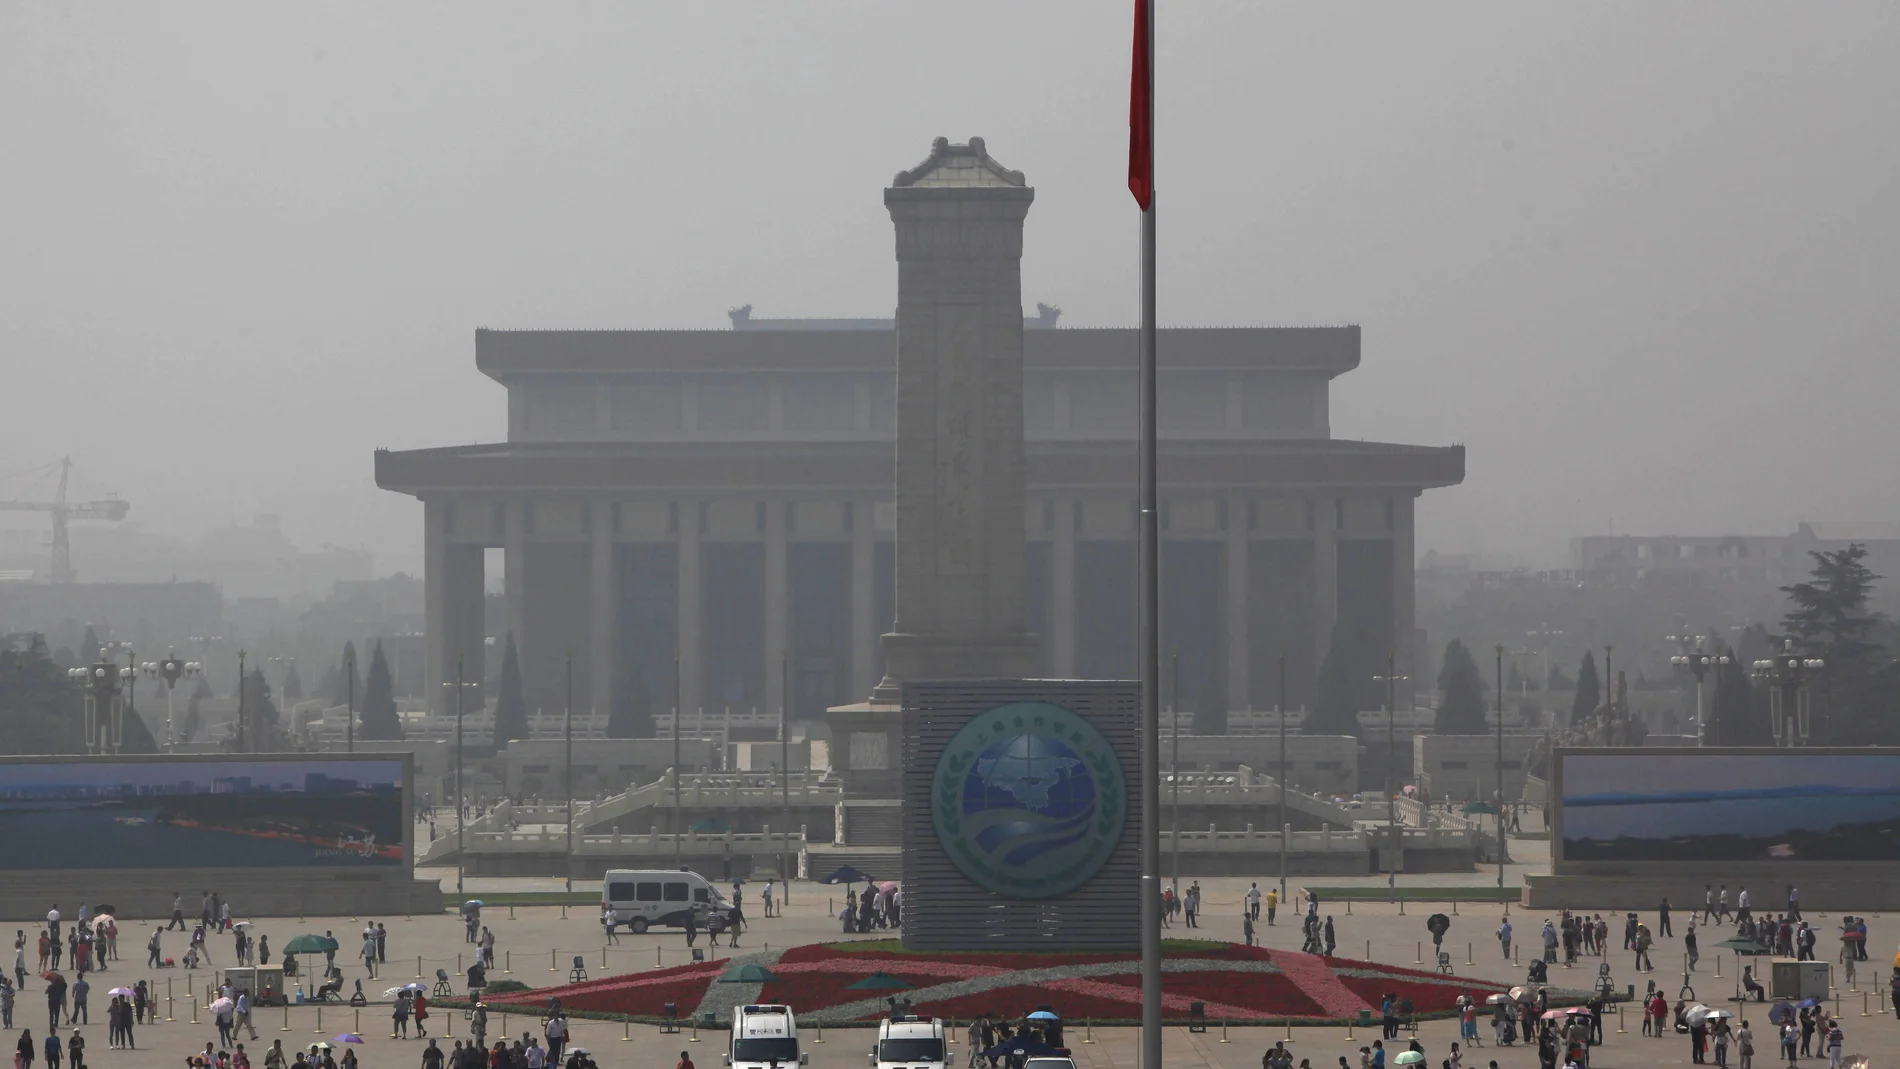 Vista general de la plaza de Tiananmen en un aniversario de los hechos de 1989